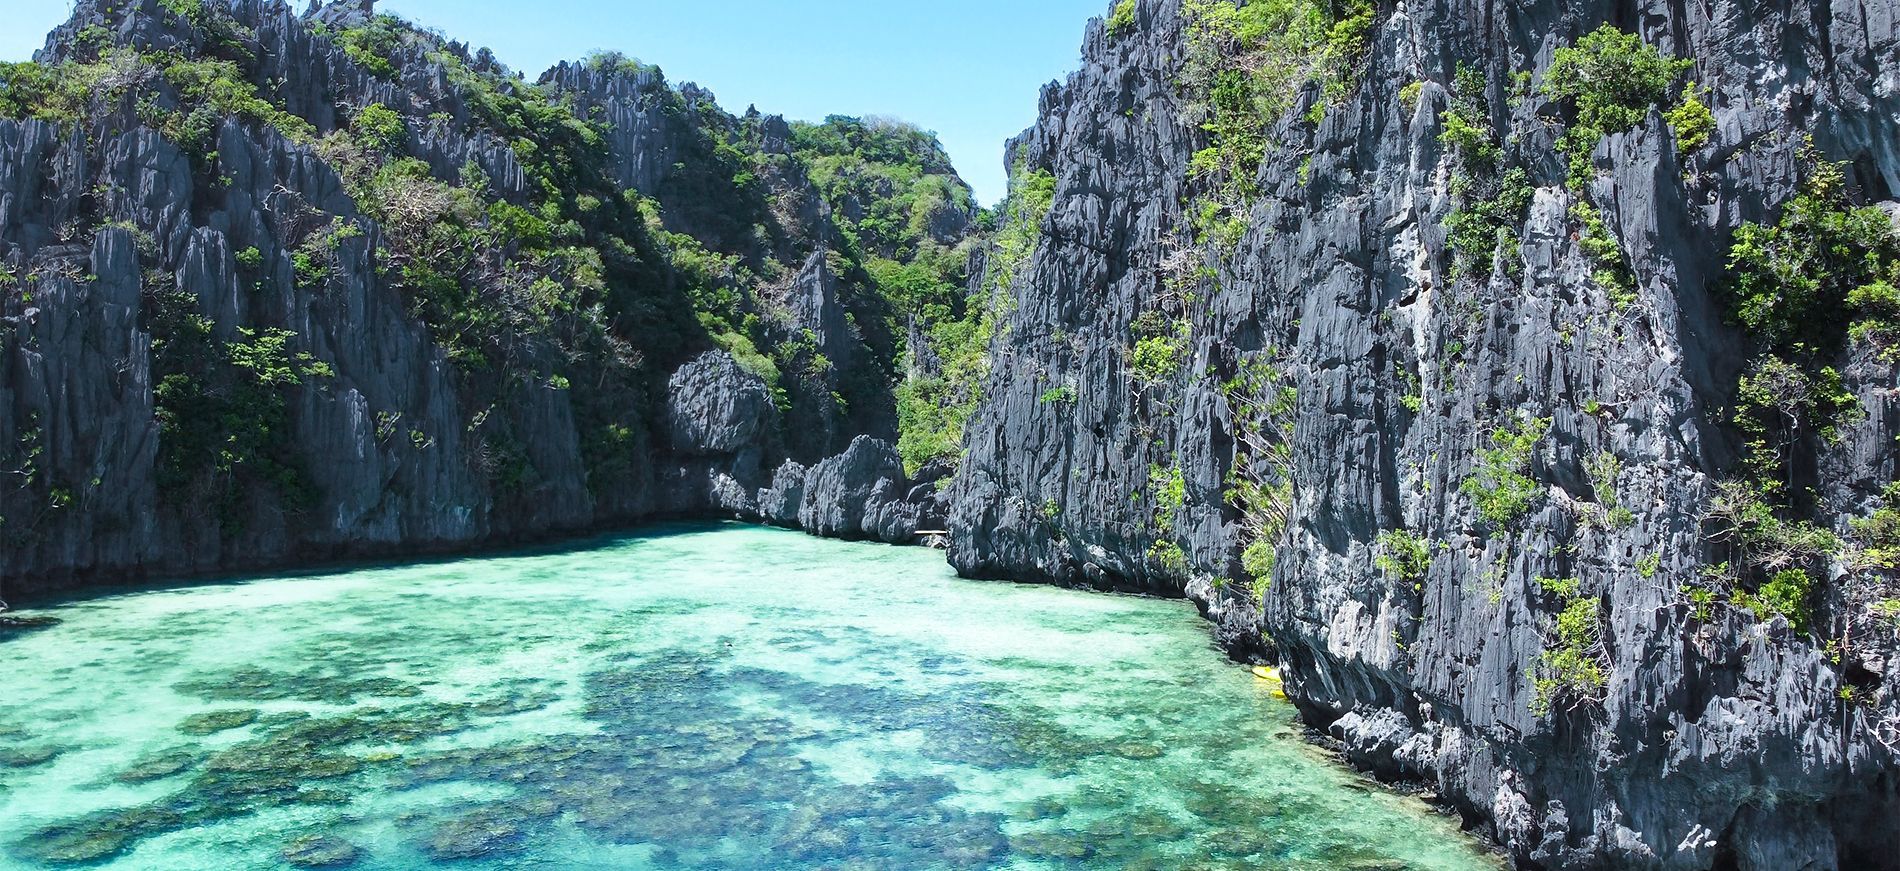 Viaggio nelle Filippine: itinerario di 3 settimane